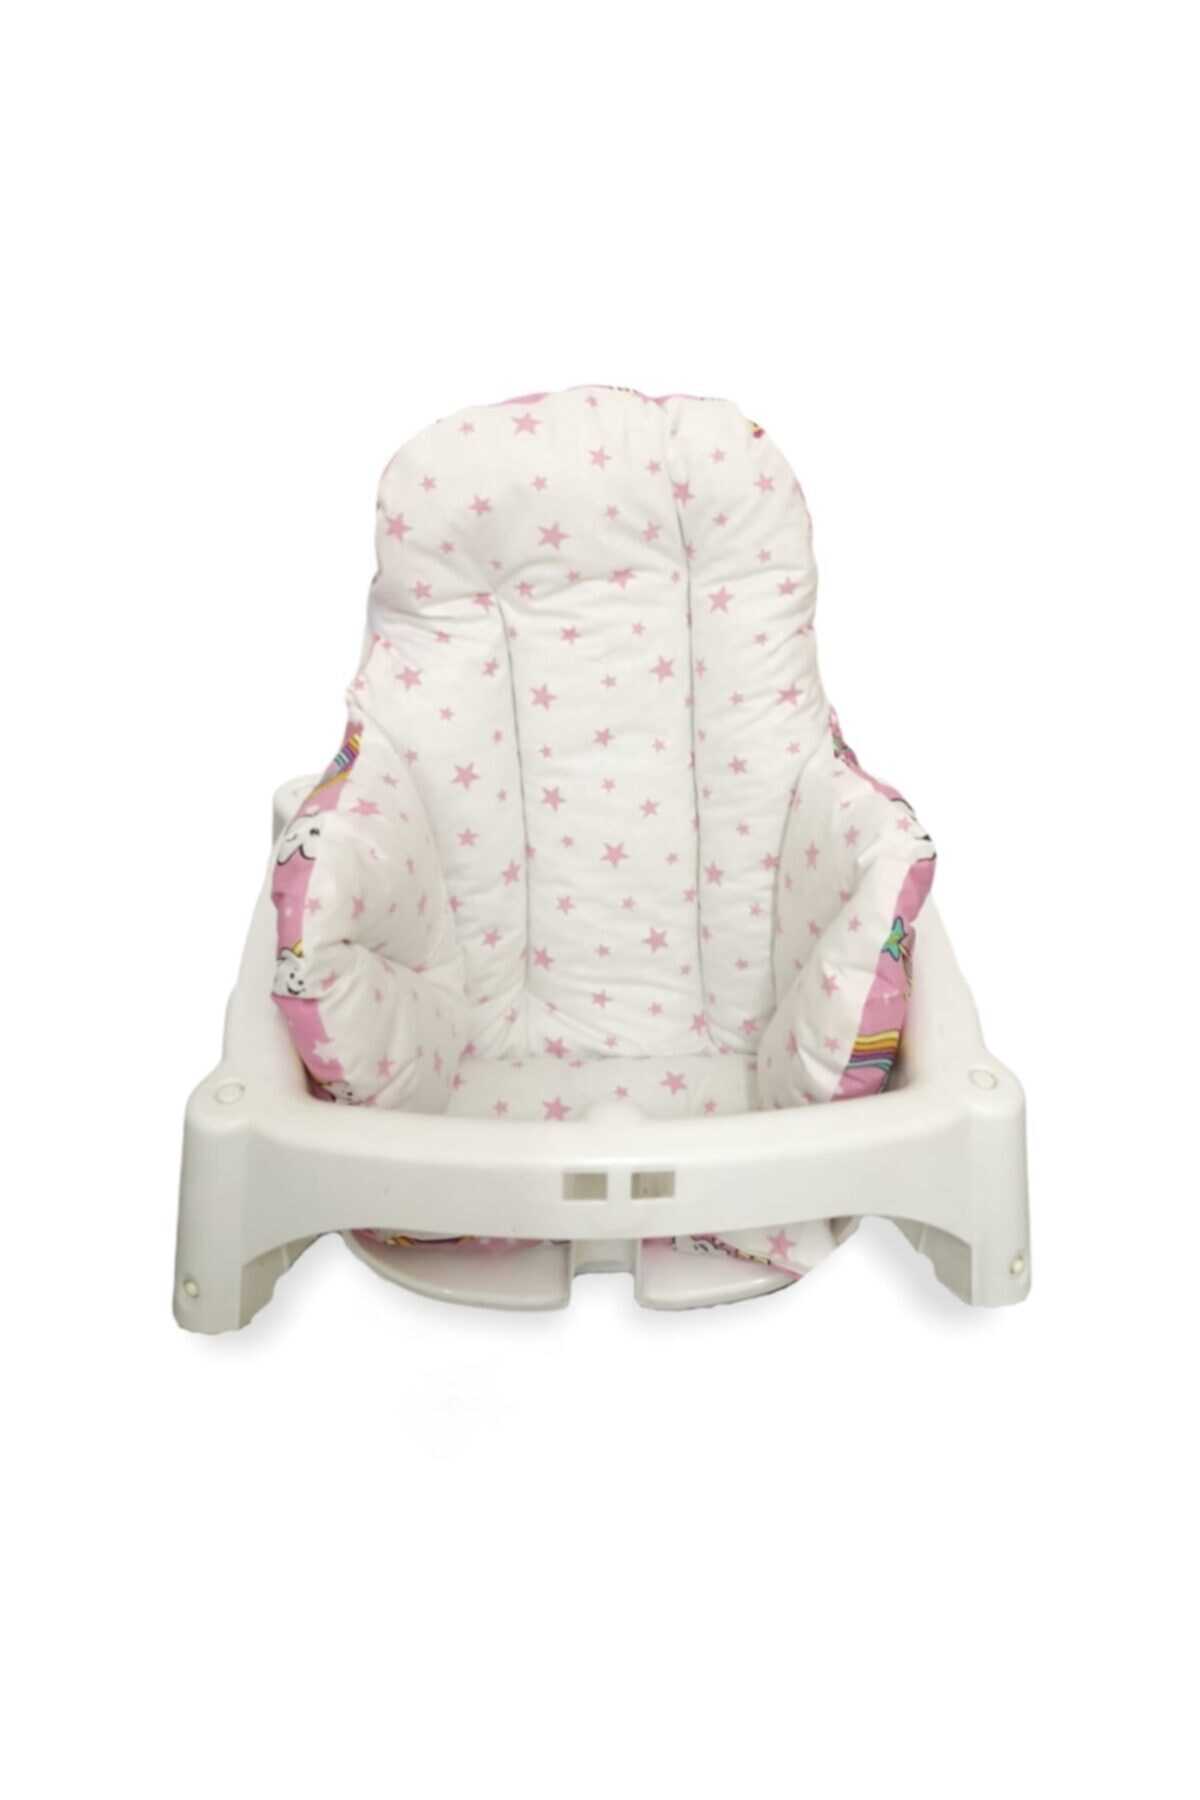 کوسن صندلی کودک دو رو طرح دار سفید صورتی برند Bebek Özel 